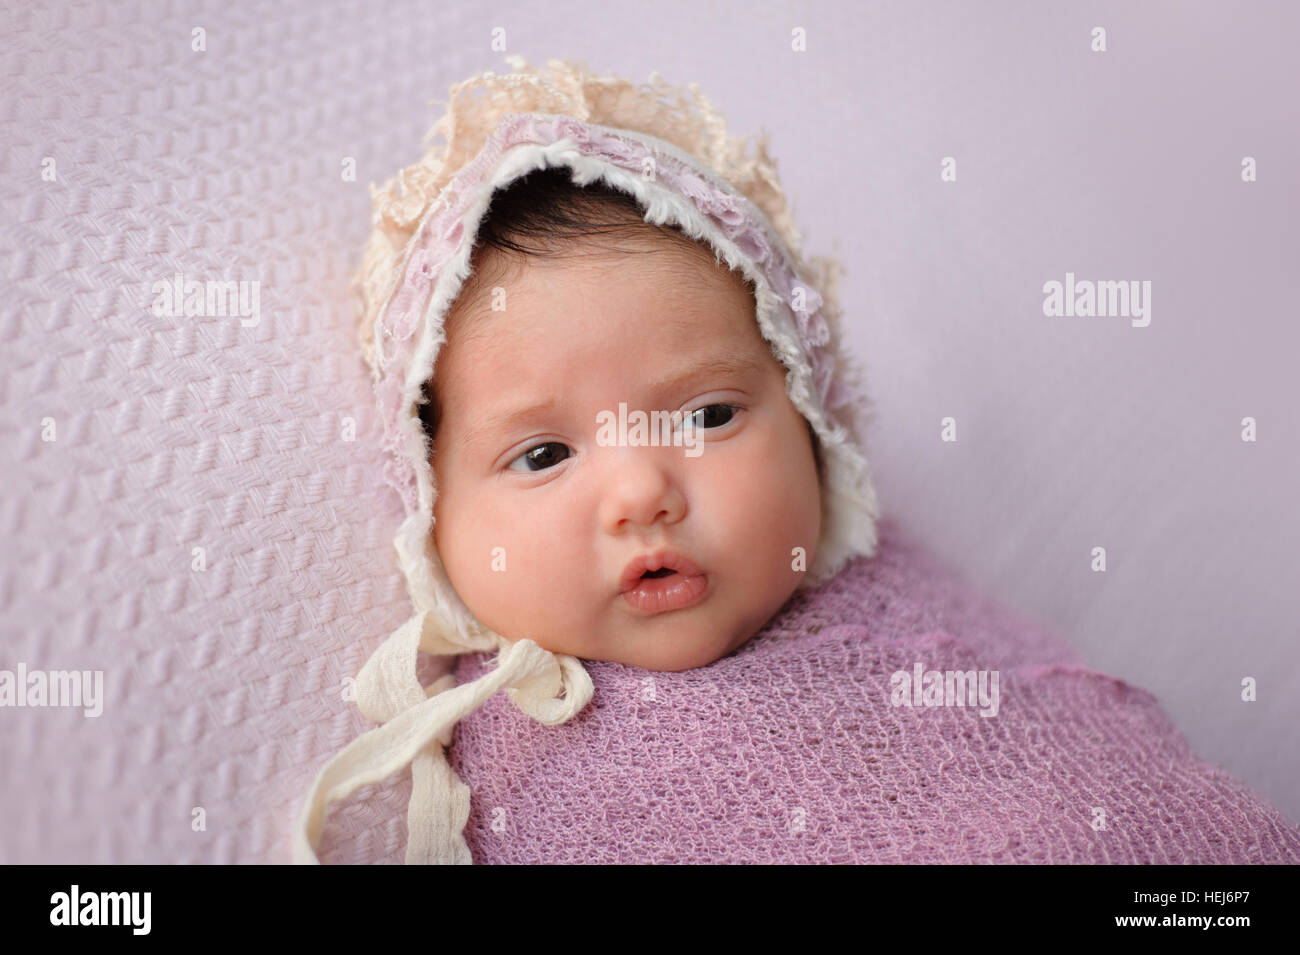 Porträt eines Mädchens alert, sechs Wochen altes Baby. Sie ist in einem Lavendel gepuckt Wrap und trägt eine Spitze Mütze. Stockfoto